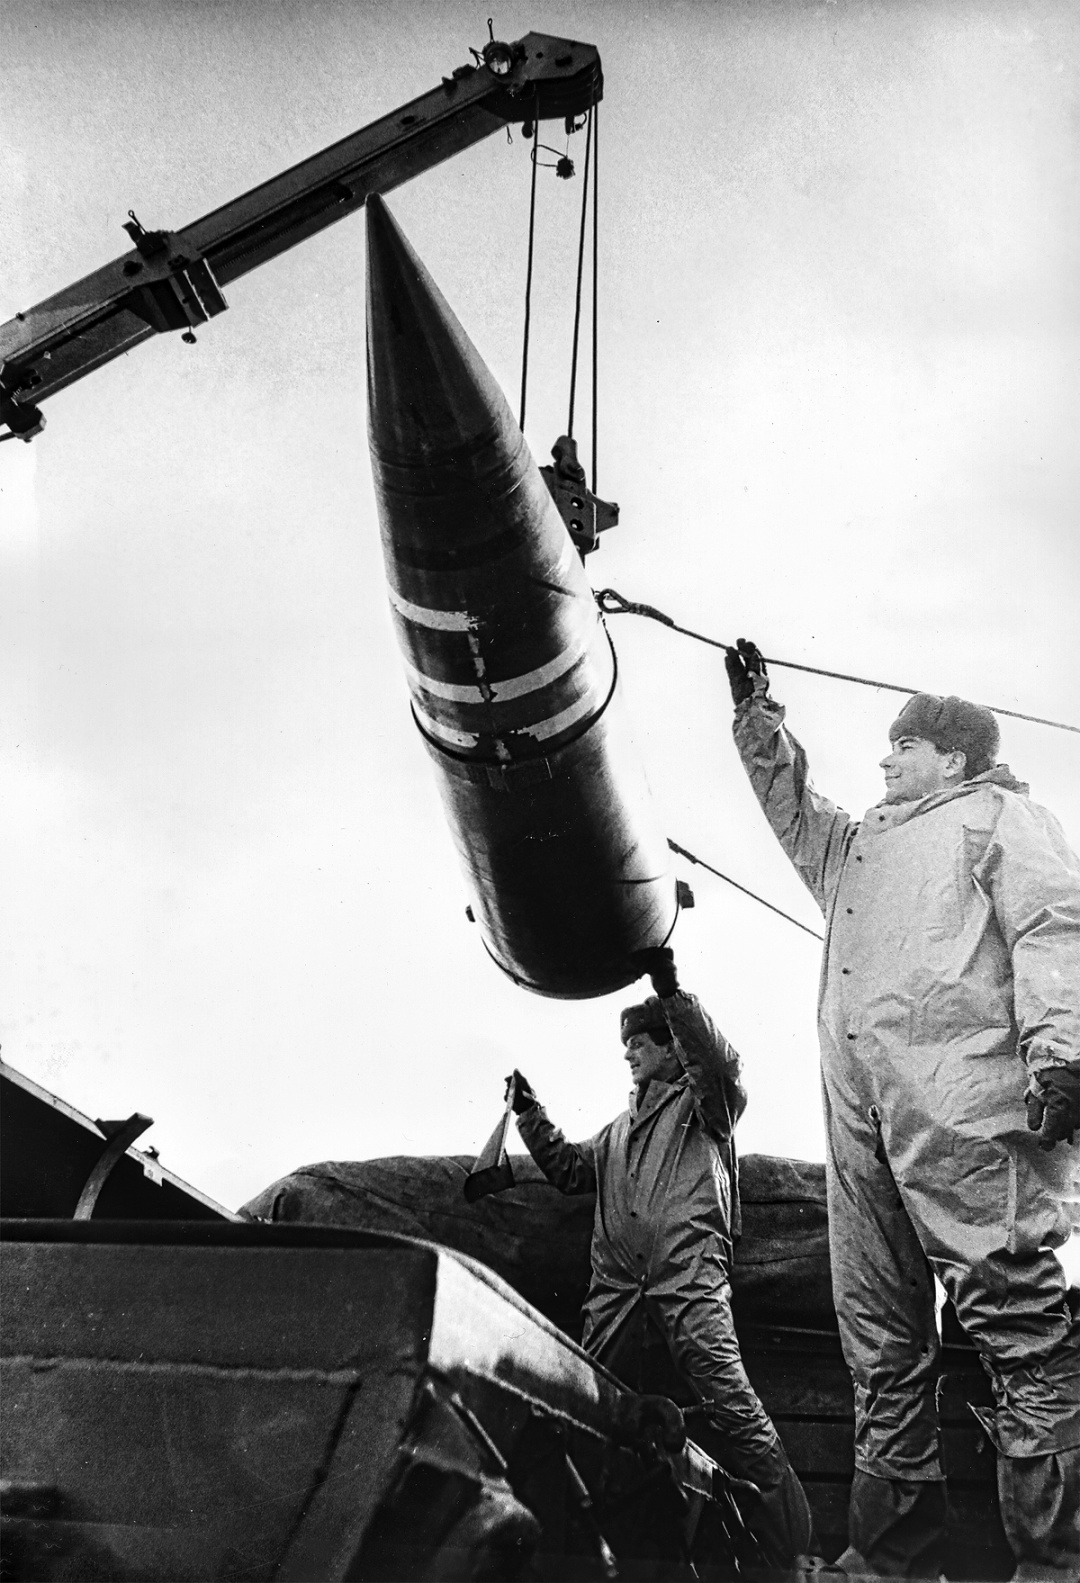 Ядерну боєголовку переміщають в контейнер, для подальшої передачі з України у Росію / Фото Валерія Соловйова, січень 1992 року